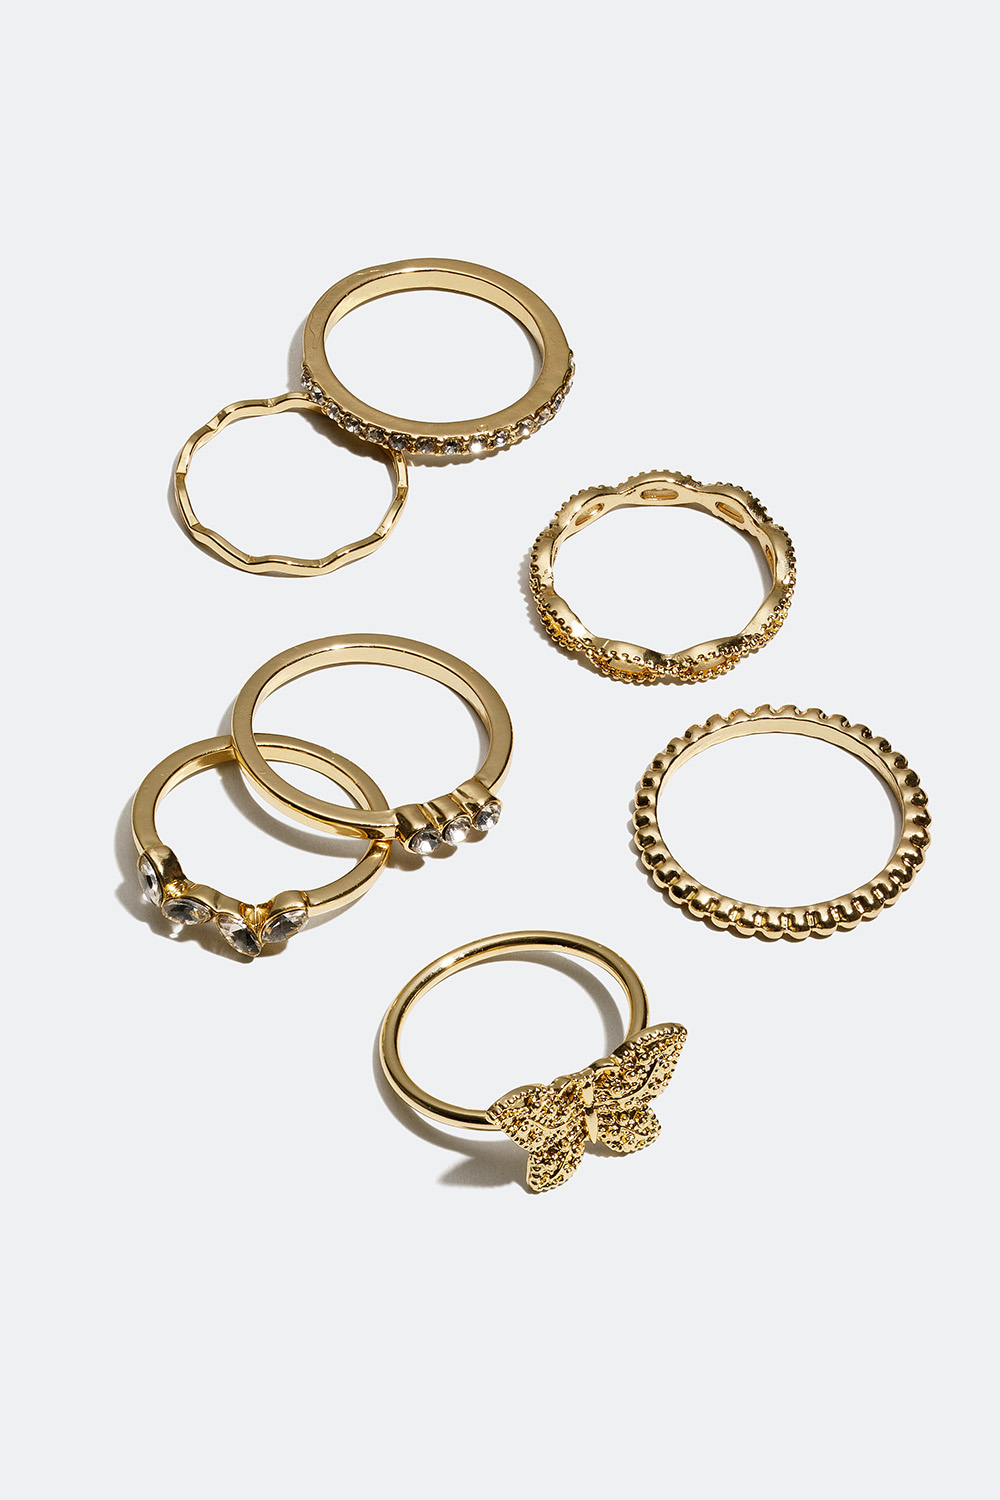 Gullfargede ringer i ulike design med sommerfugl, glassteiner, 7-pakning i gruppen Smykker / Ringer / Flerpakning hos Glitter (256000592)